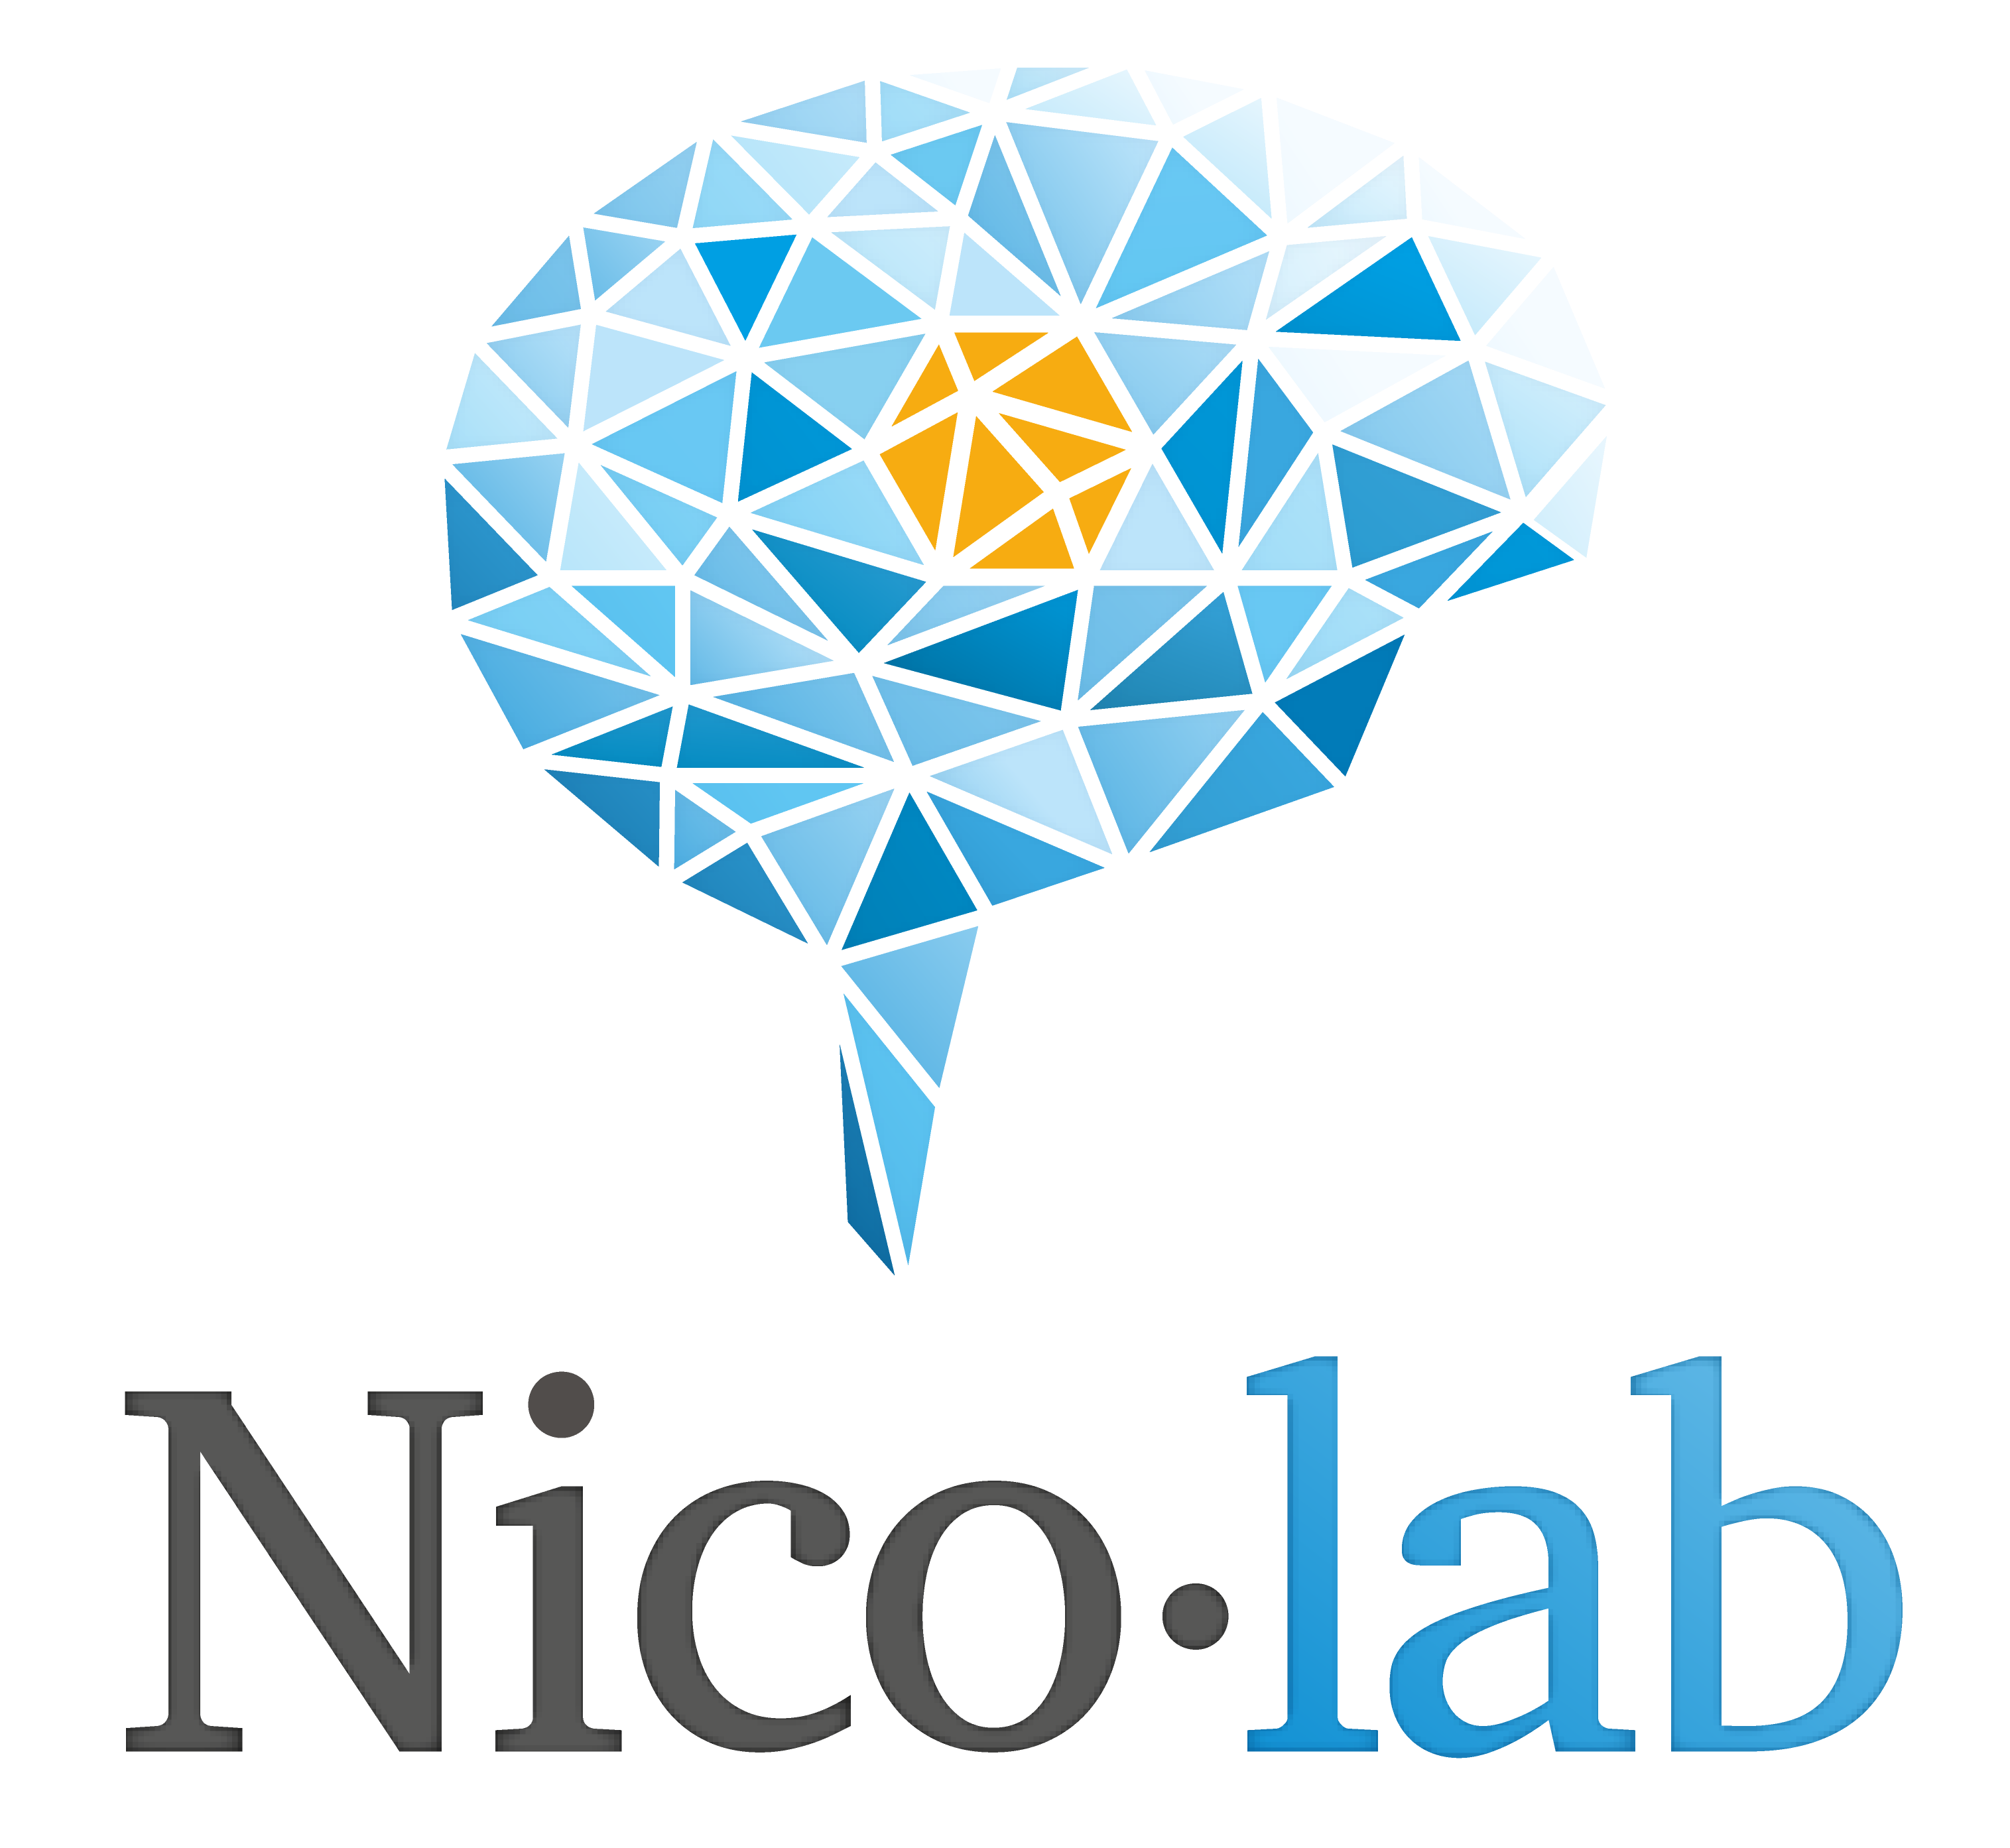 Nico lab